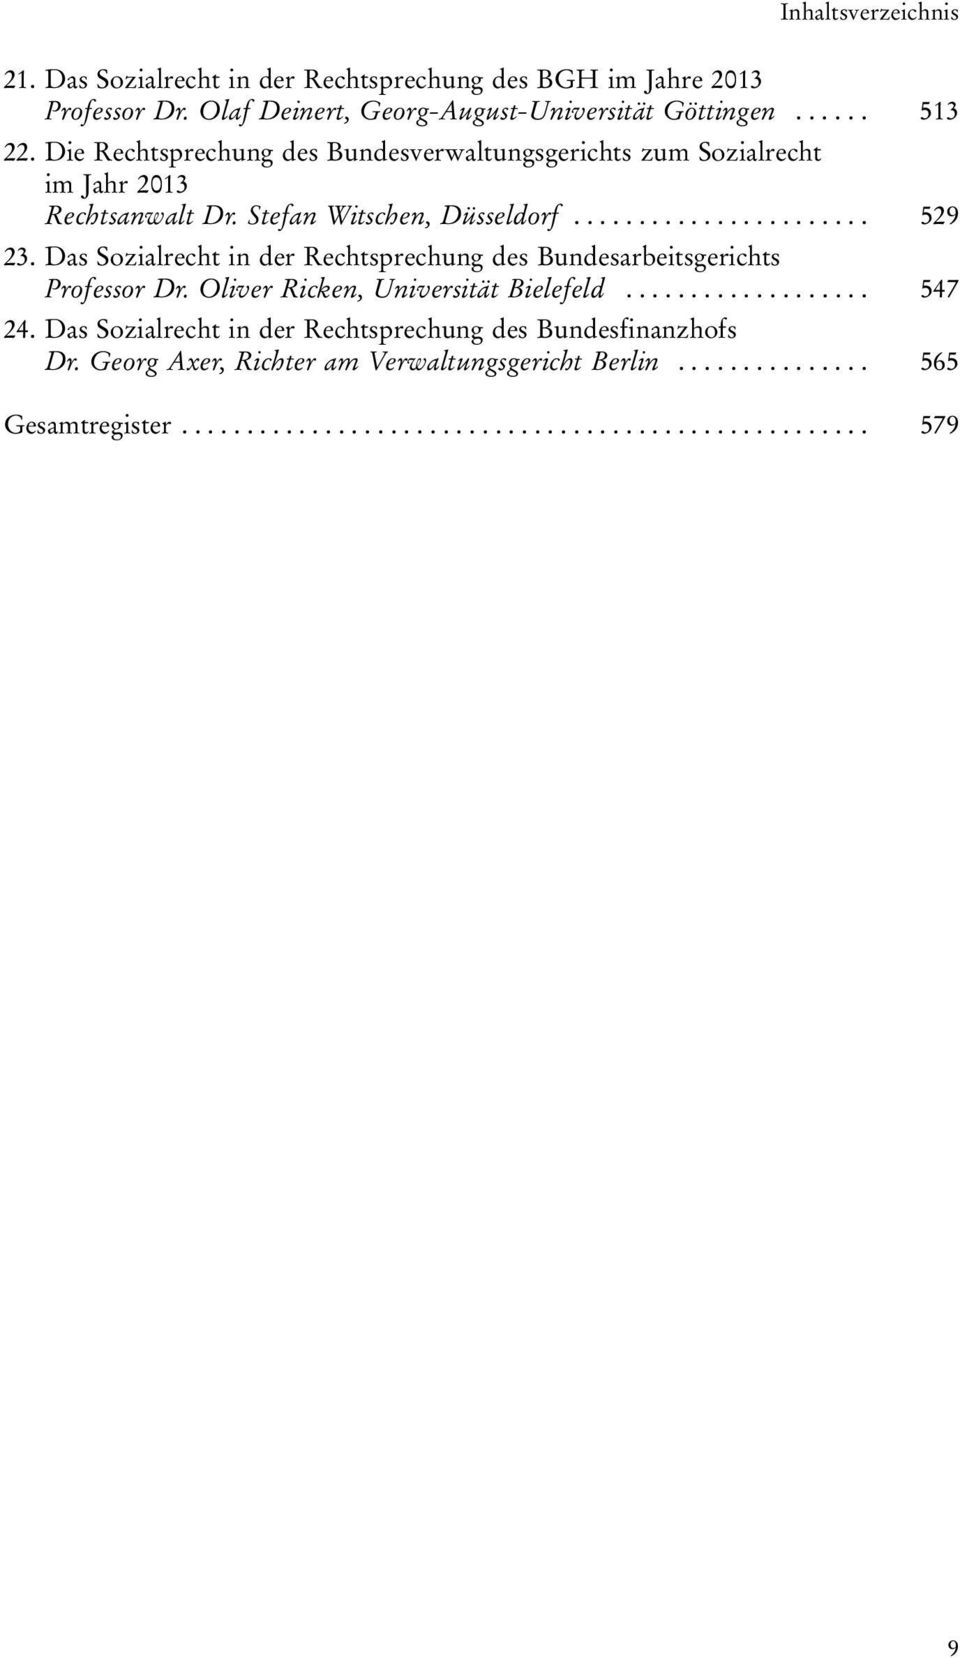 Das Sozialrecht in der Rechtsprechung des Bundesarbeitsgerichts Professor Dr. Oliver Ricken, Universität Bielefeld................... 547 24.